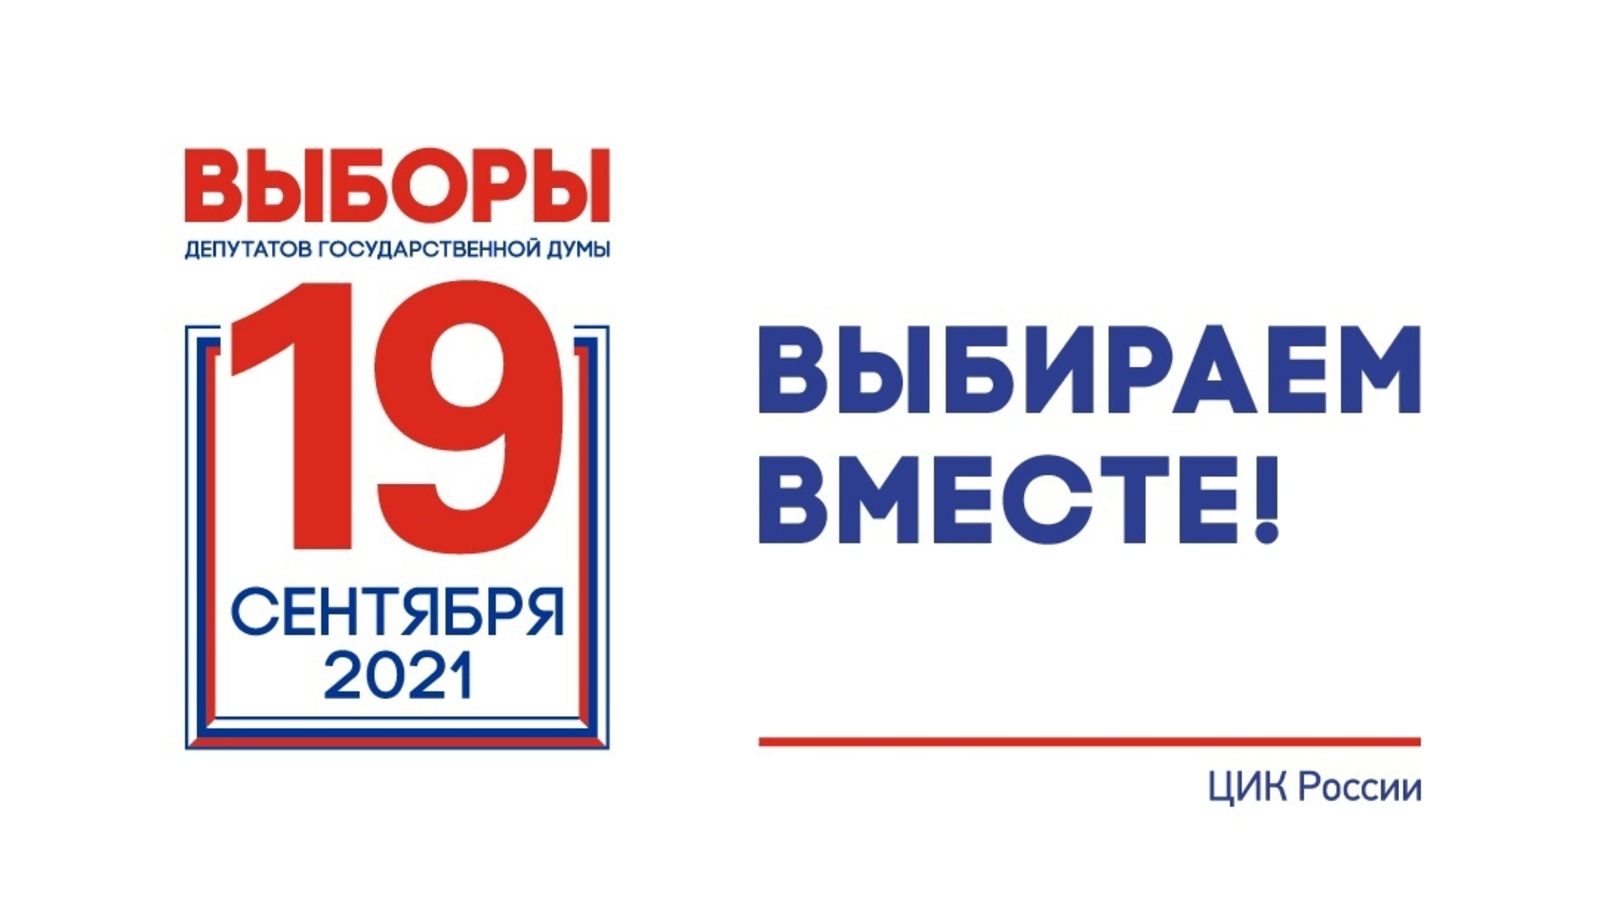 ВЫБОРЫ-2021 в Башкирии: 19 сентября 15:00 - явка почти 60%